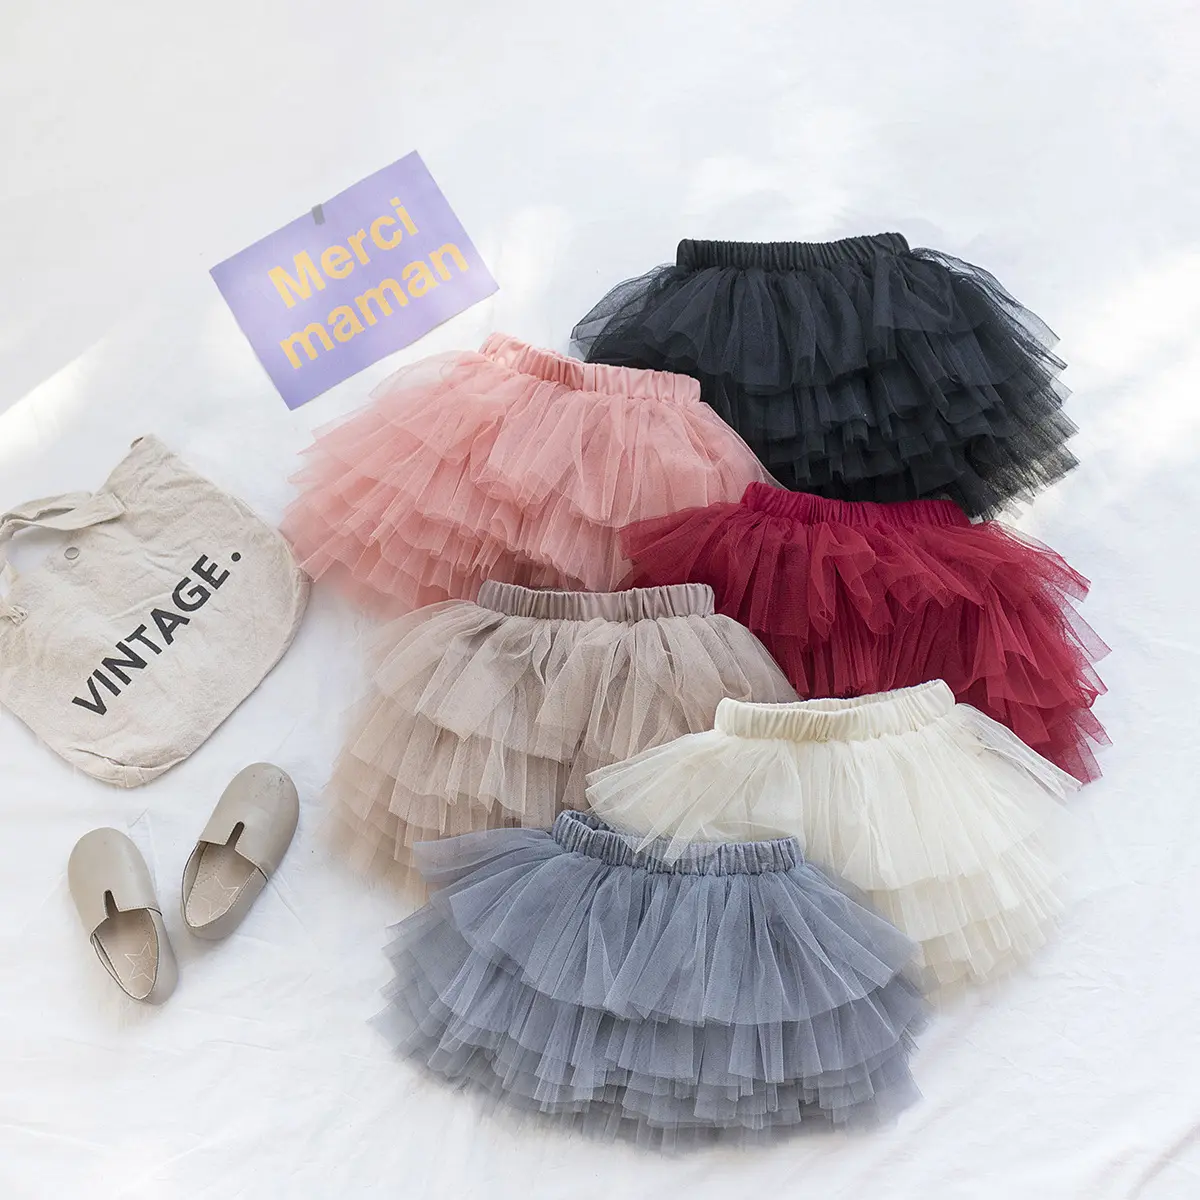 Q108018 una línea de Color sólido faldas 36 neto 6 capa de malla de poliéster suave niños niñas Tutu Rosa Ballet Tutu faldas tuuts vestido